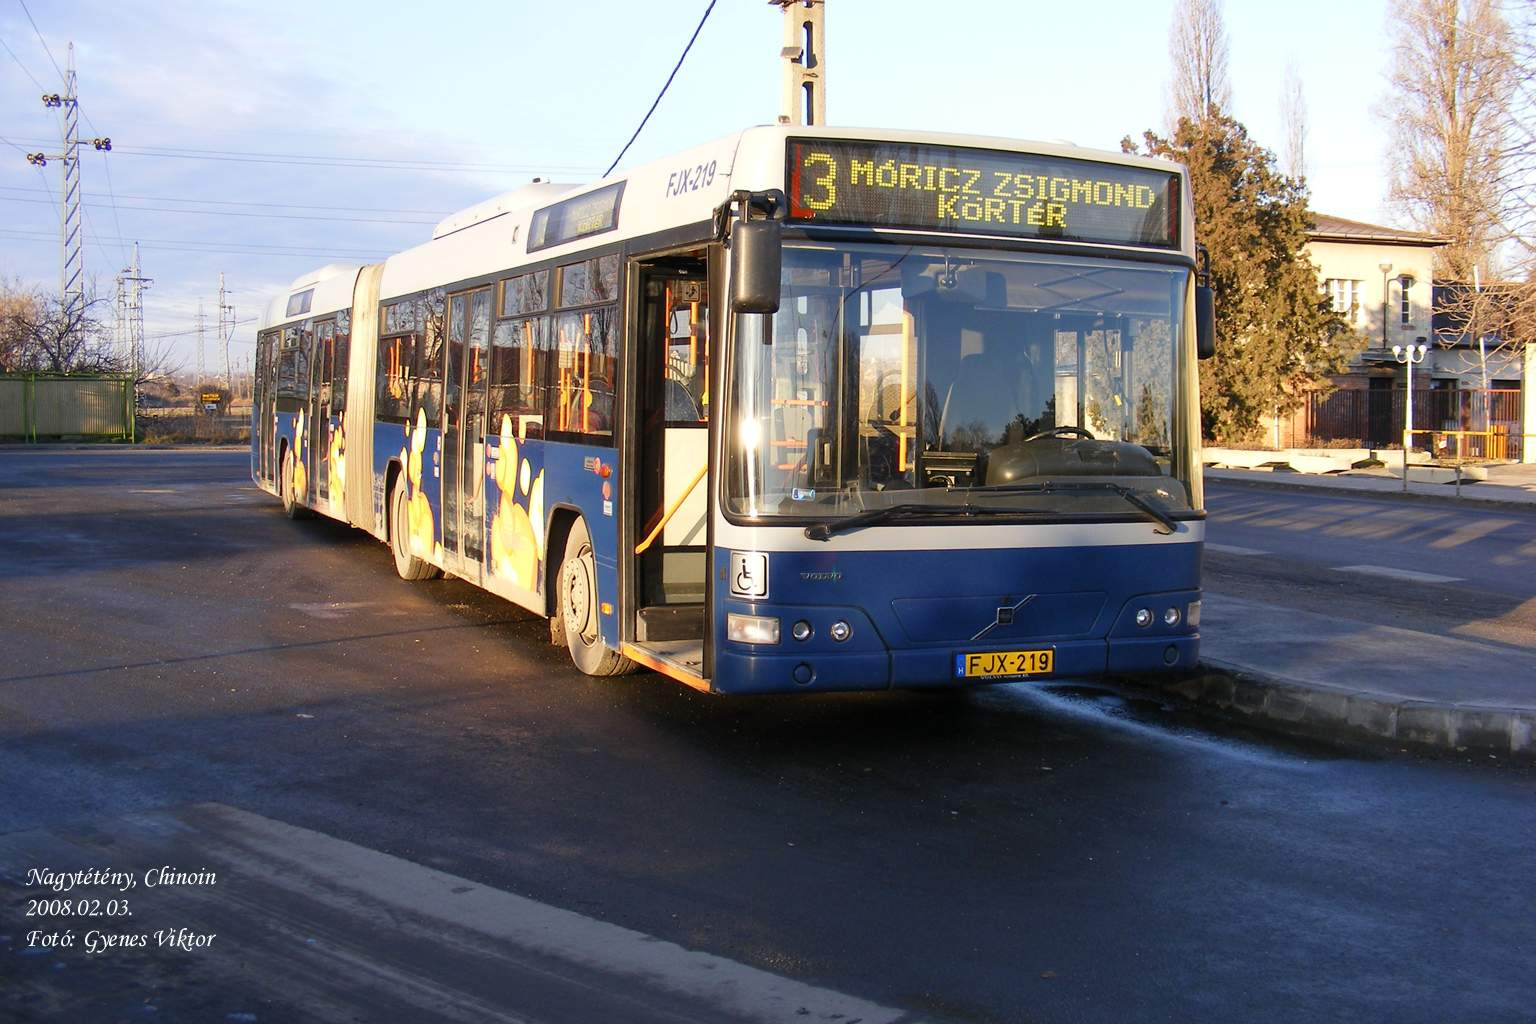 Busz FJX-219 1